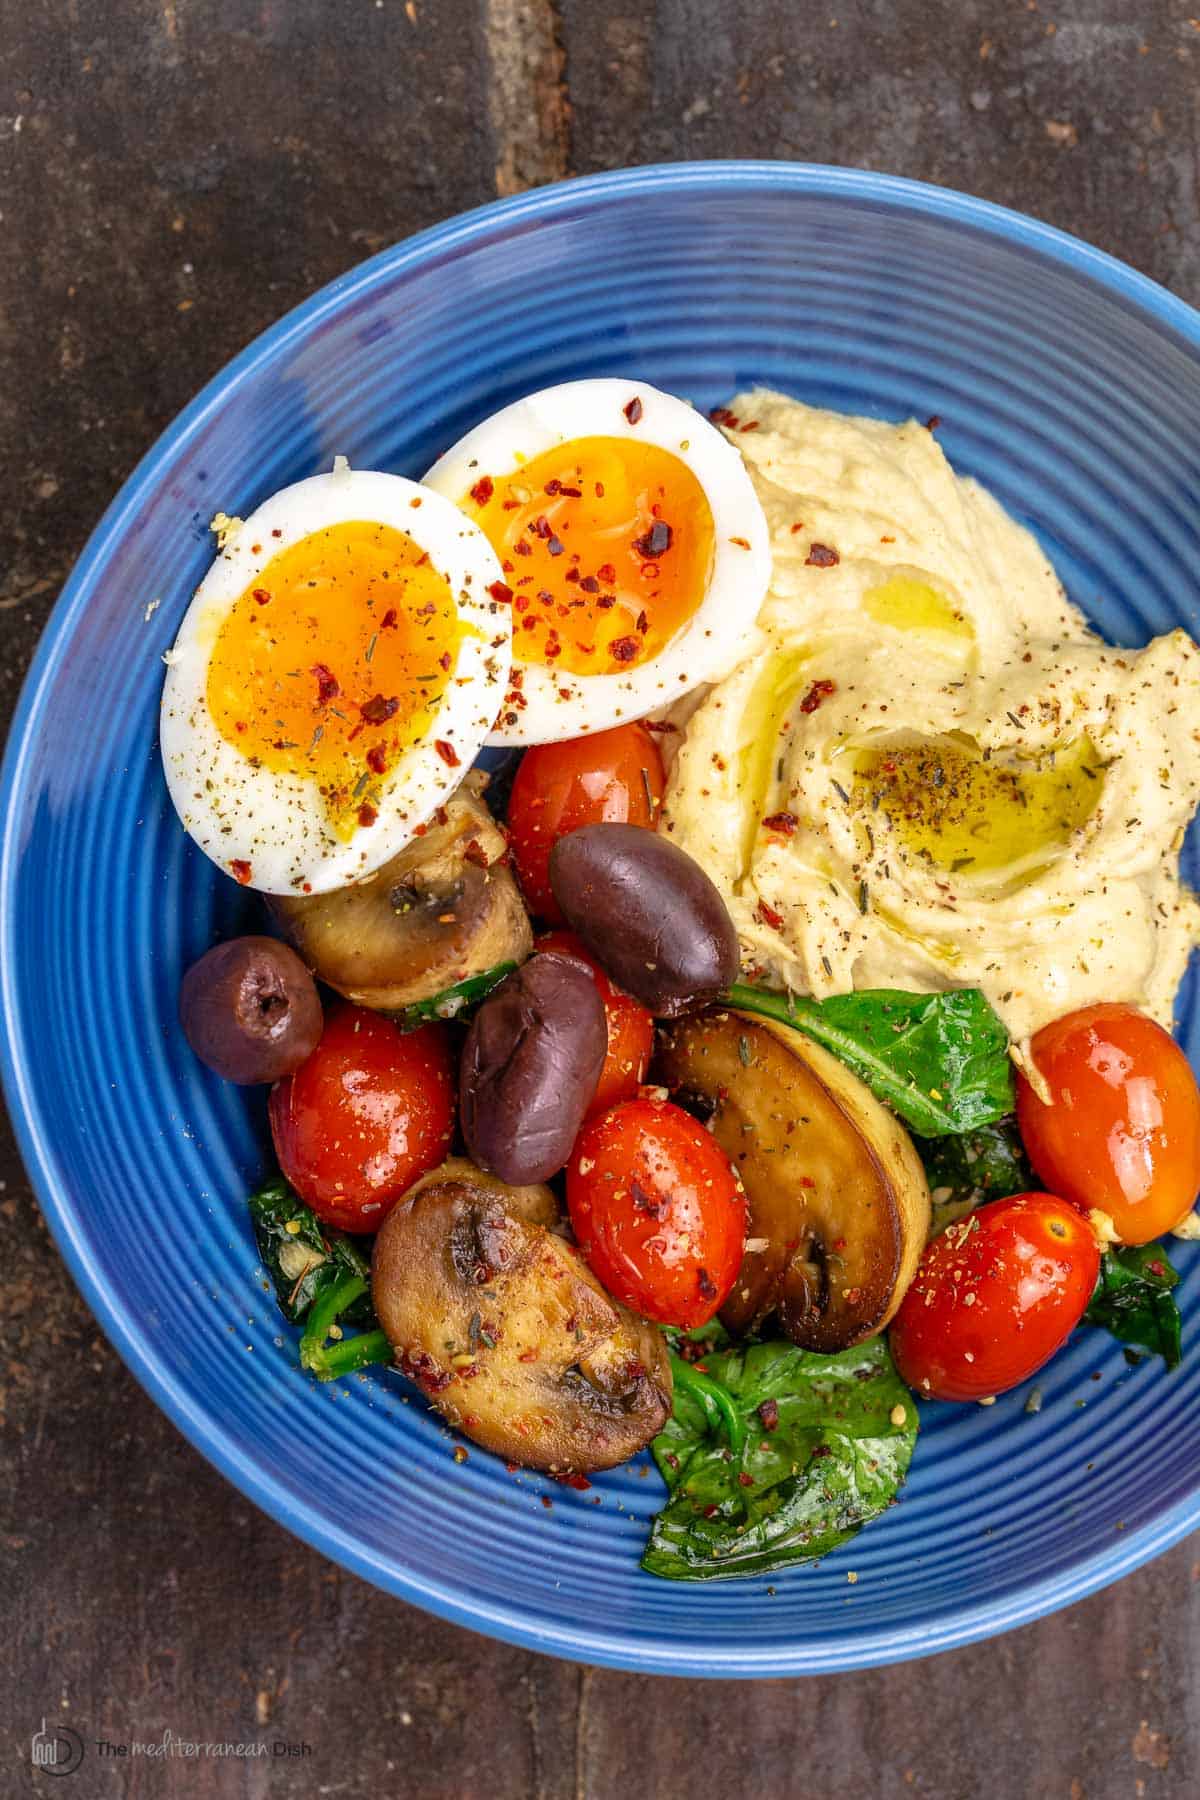 Delicious Mediterranean Breakfast Ideas: What Can You Eat for Breakfast on the Mediterranean Diet